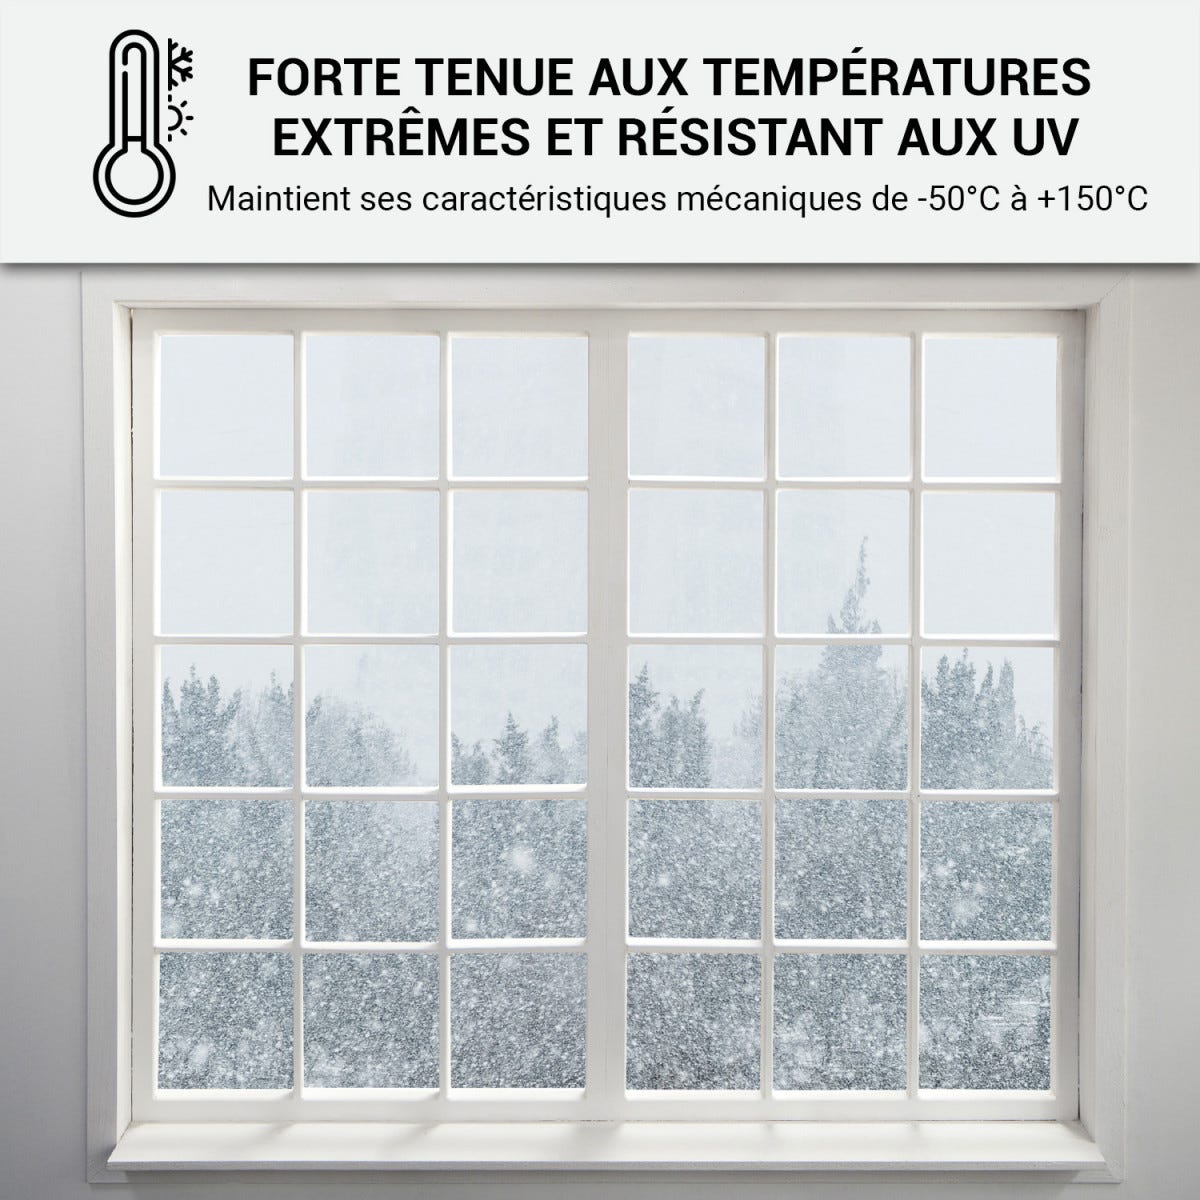 Mastic Silicone intérieur / extérieur pour fenêtres et menuiseries : ARCAMASTIC BATIMENT Transparent - 300 ml x 12ARCANE INDUSTRIES 7